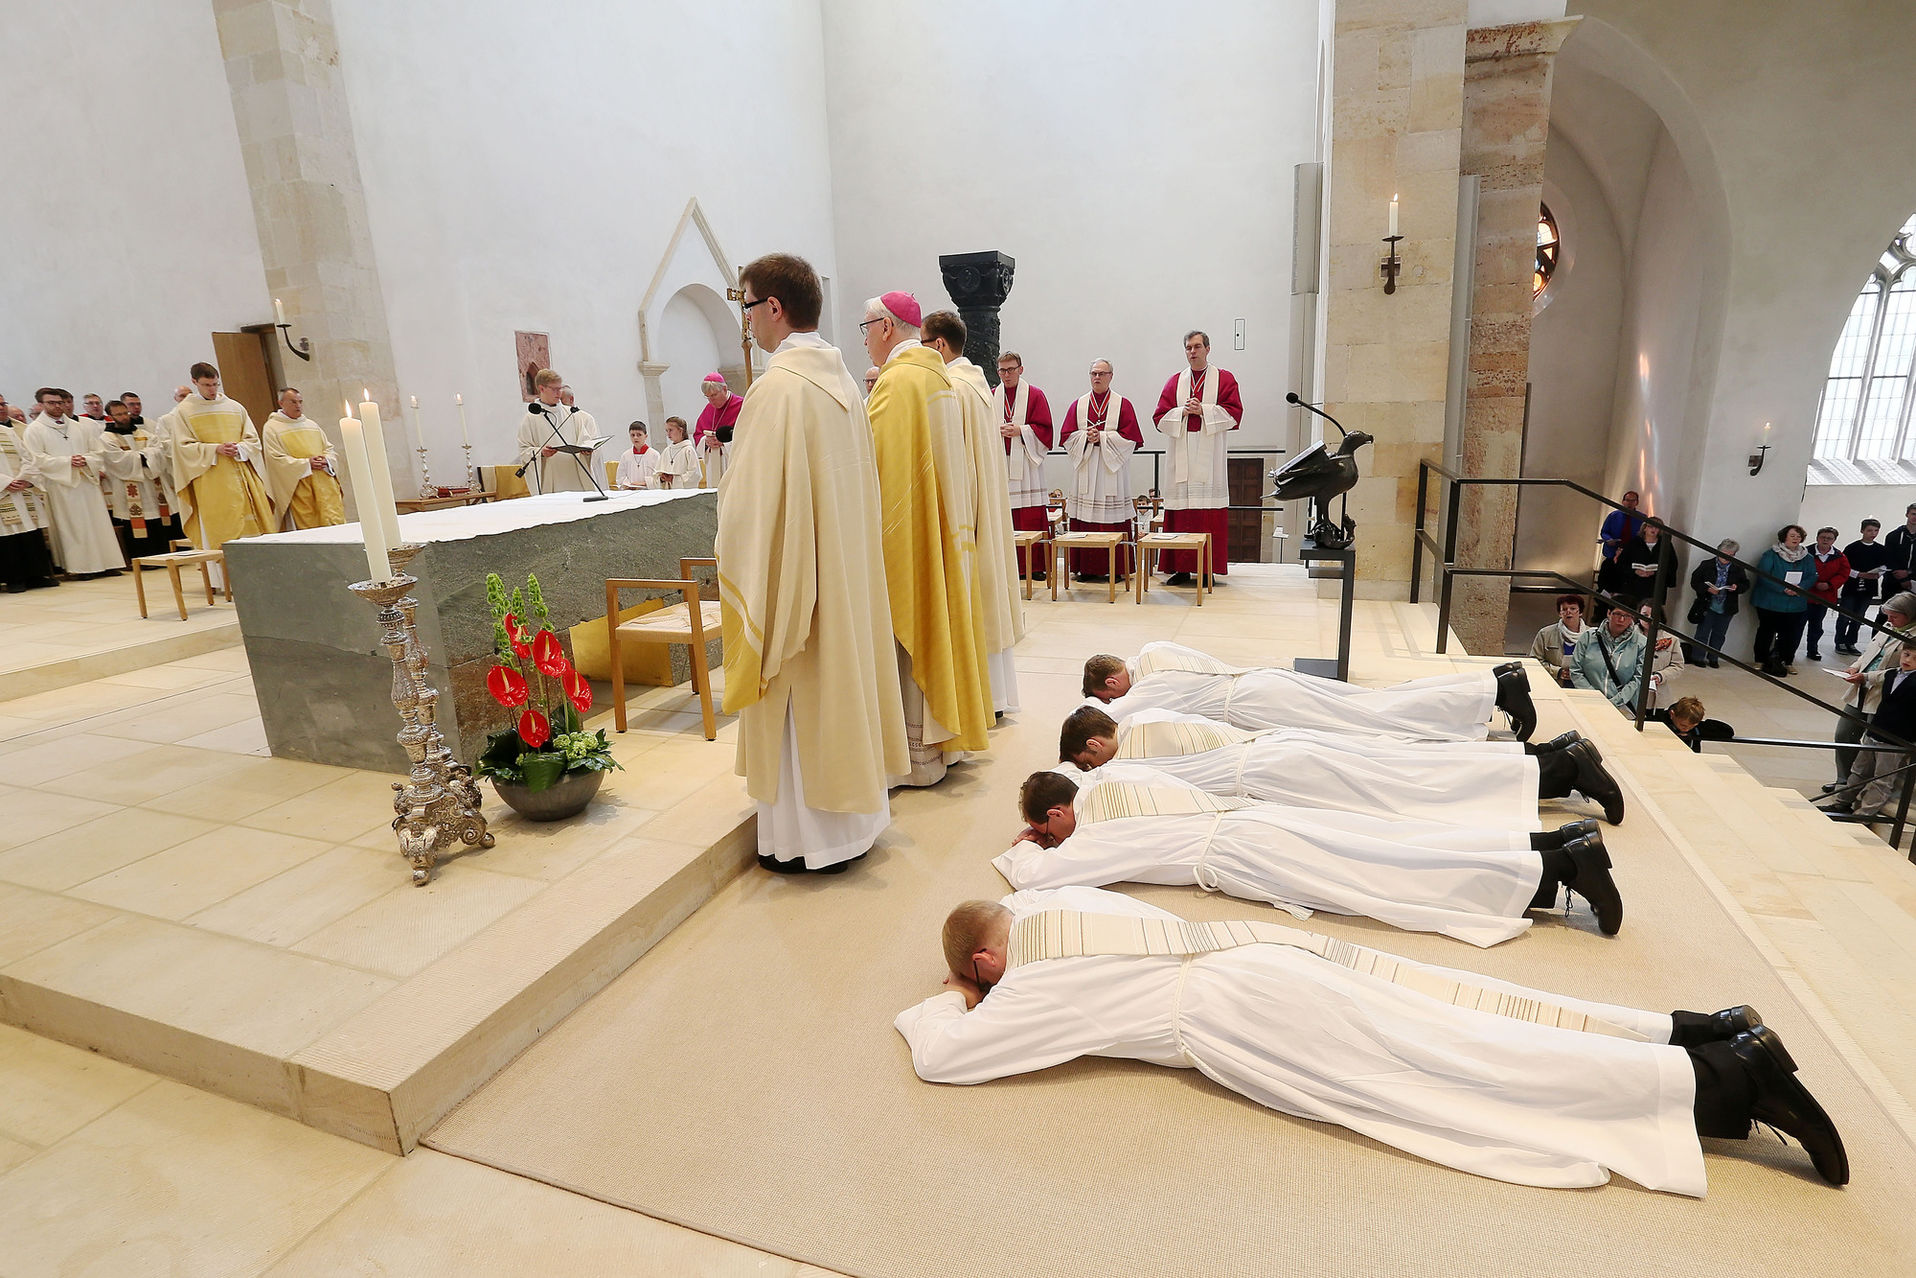 Als Zeichen ihrer Hingabe und Demut gegenüber Gott legten sich die vier Priesteramtskandidaten ausgestreckt auf den Boden, während die Gottesdienst-Gemeinde in der Allerheiligenlitanei für sie betete.